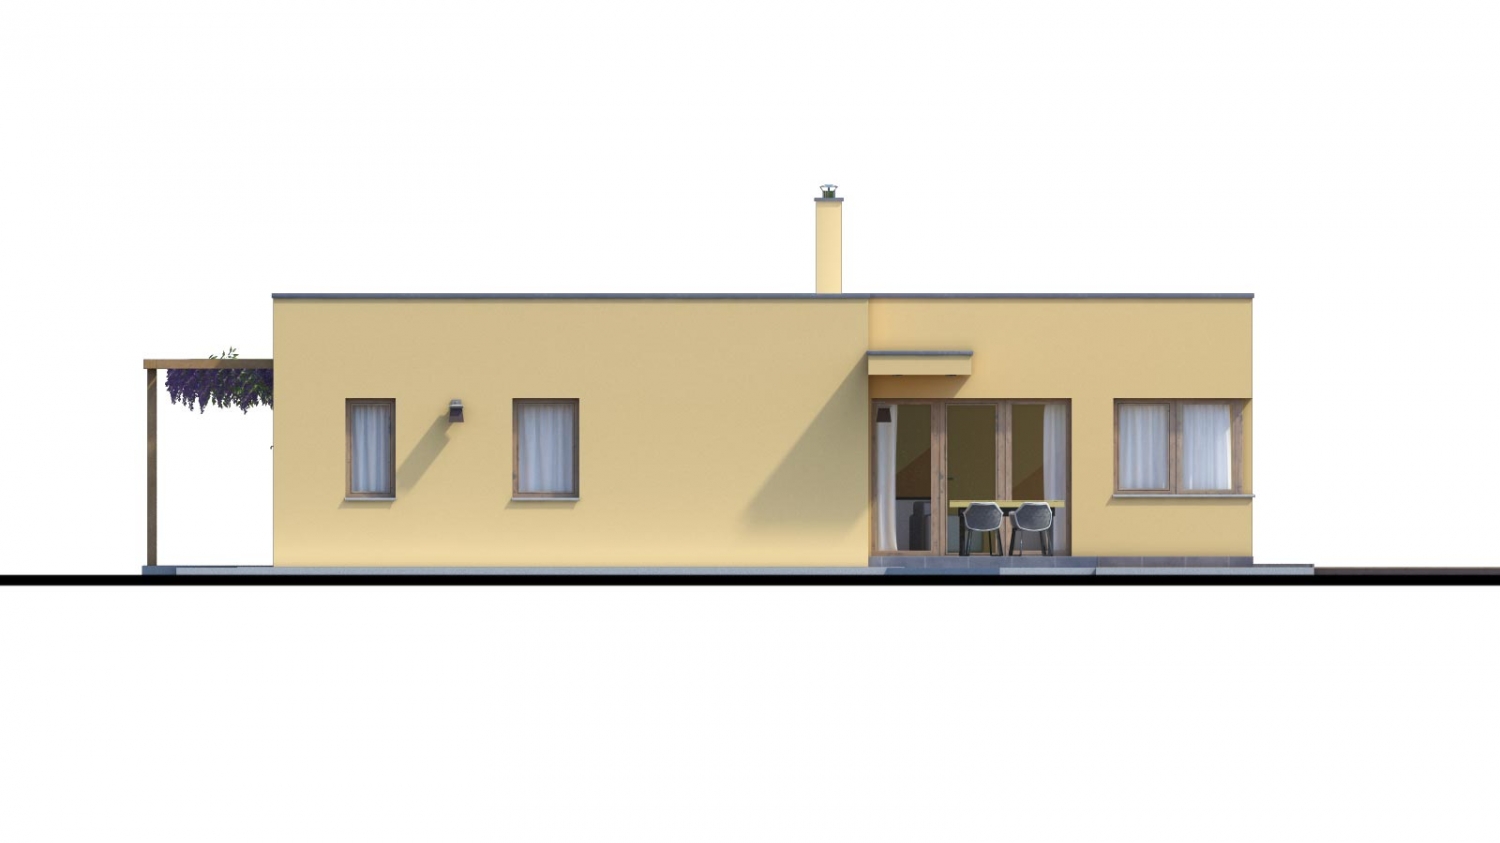 Zrkadlový pohľad 3. - Moderní dům ve tvaru L s rohovými okny a s krytým stáním pro auto. Obytné místnosti jsou orientovány do zahrady.